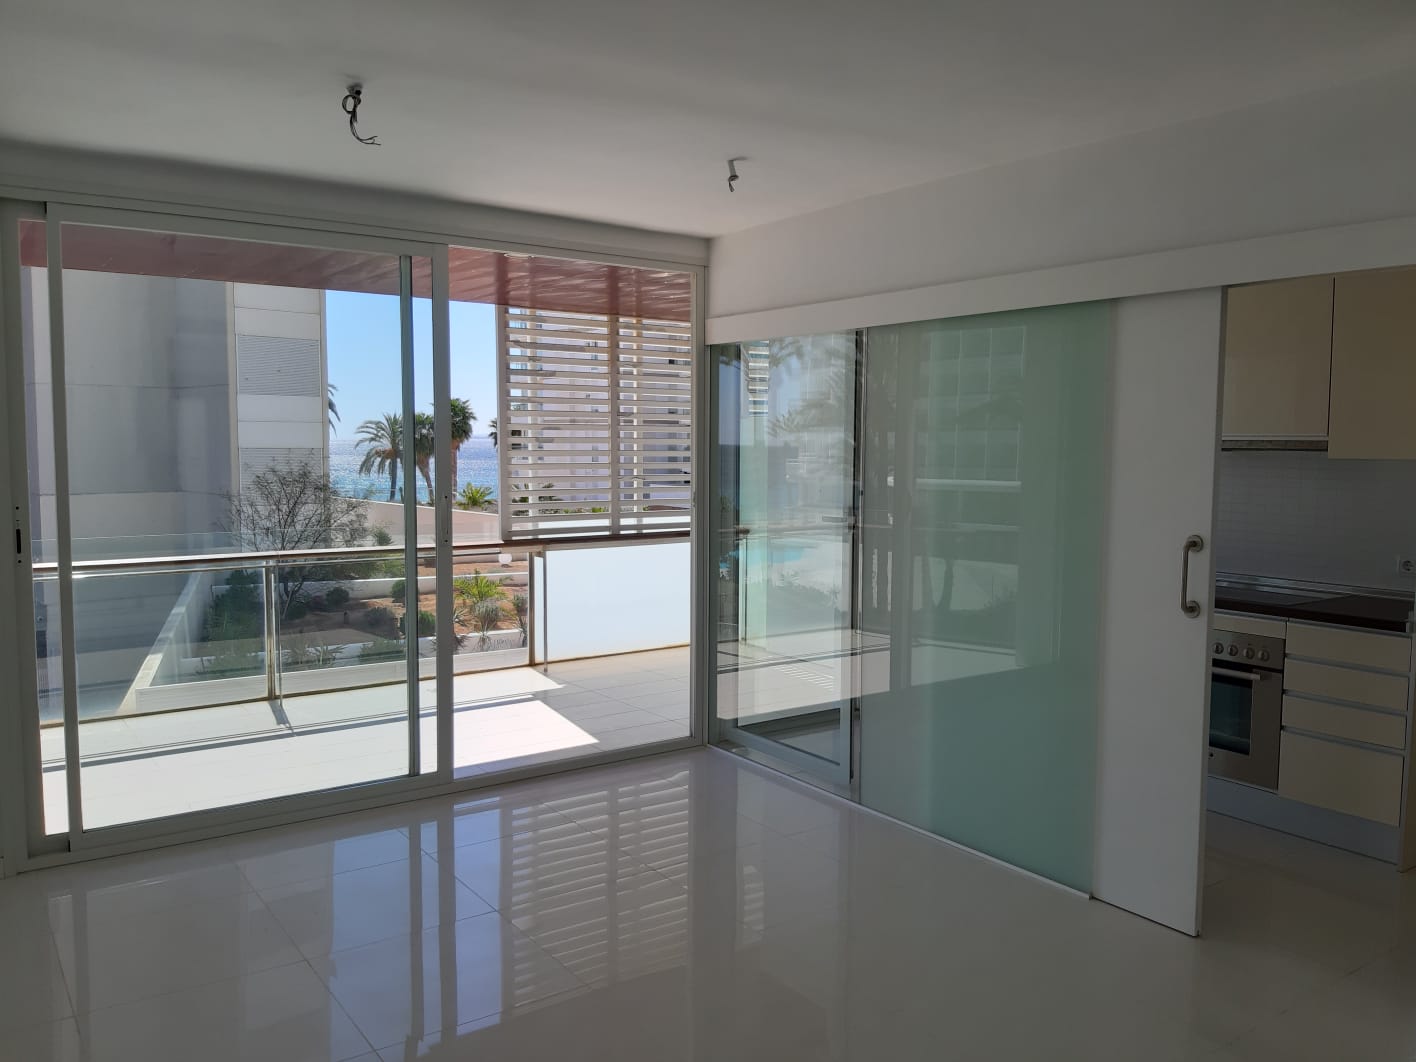 Precioso apartamento de 2 dormitorios en residencia moderna frente al mar en Playa d'en Bossa, Ibiza